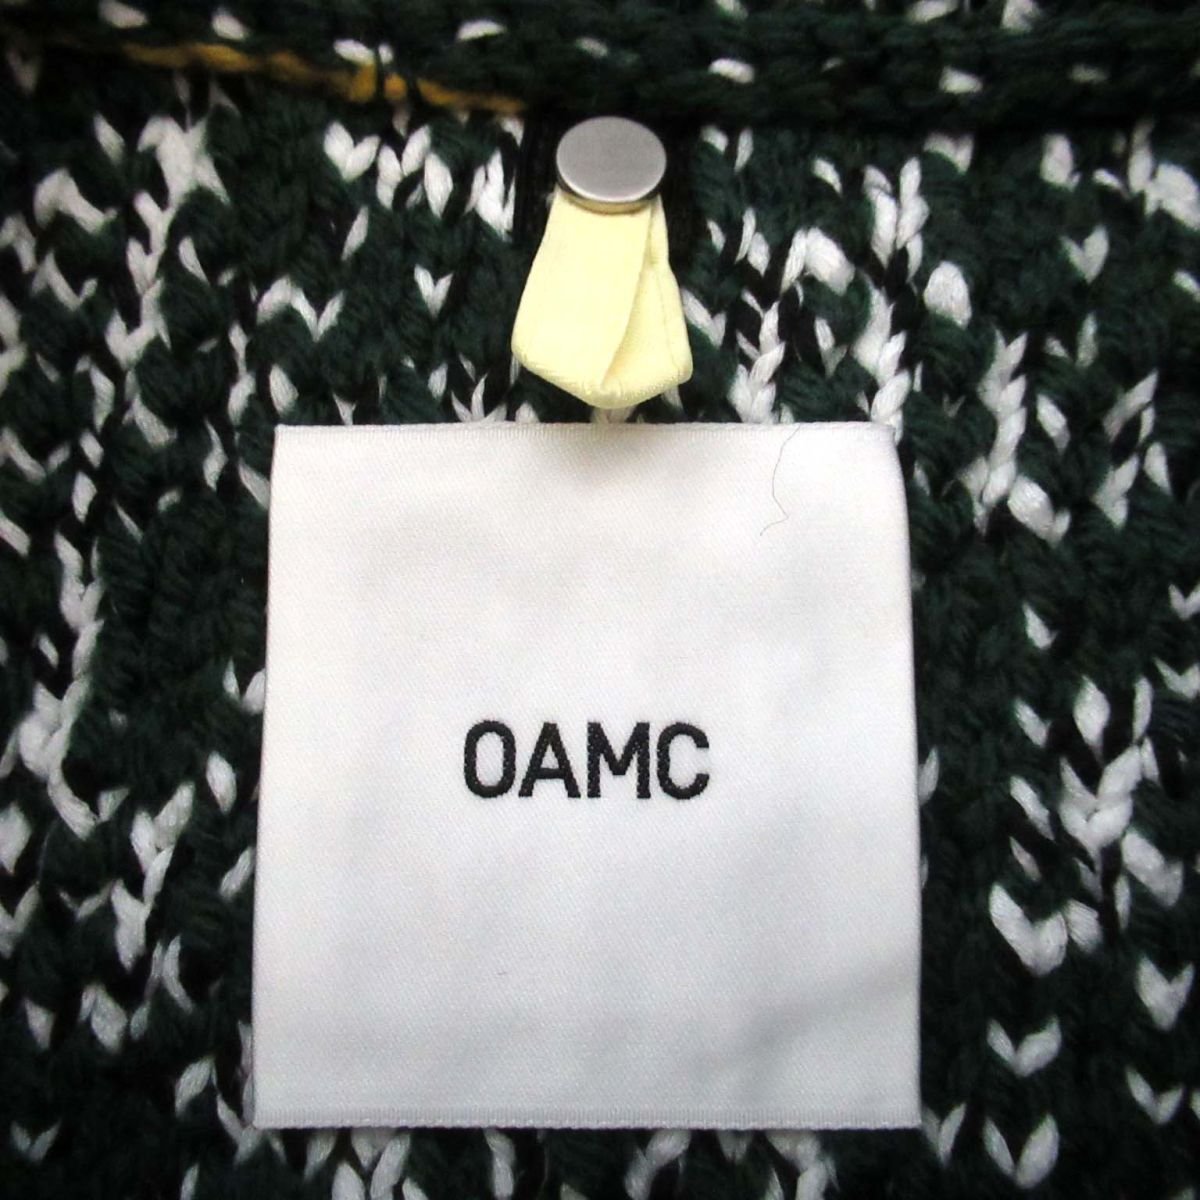  как новый 22AW OAMCo-e- M si- astral вырез лодочкой бахрома вязаный свитер 22A28OAK08 большой размер XS оттенок зеленого 